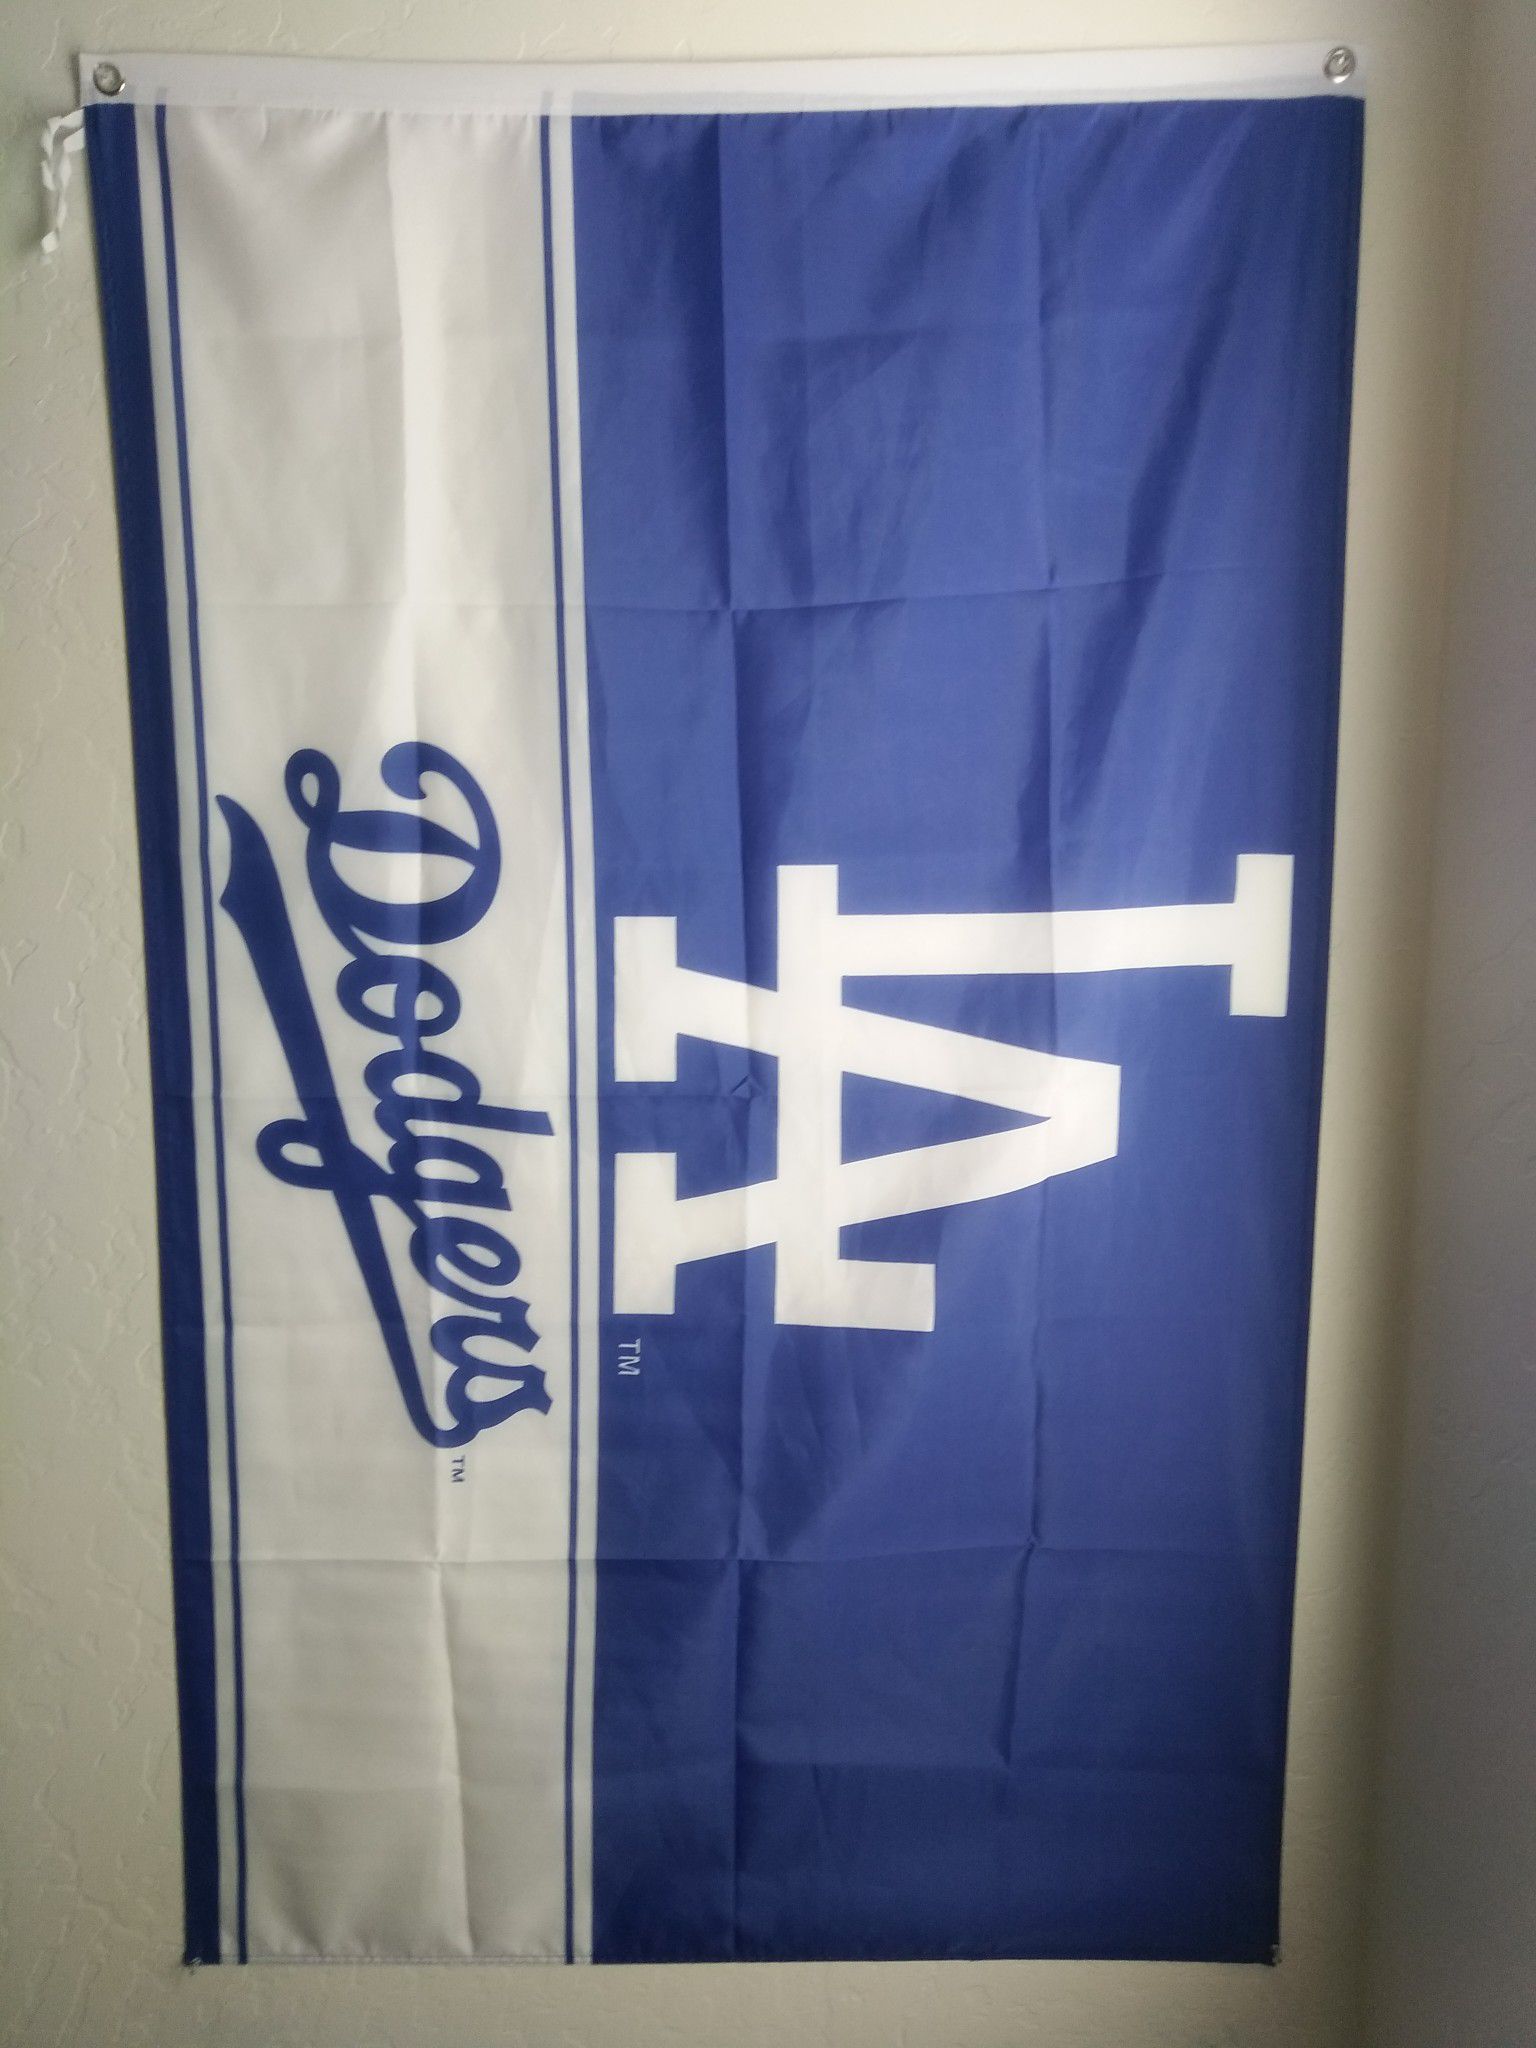 Los Angeles Dodger flag